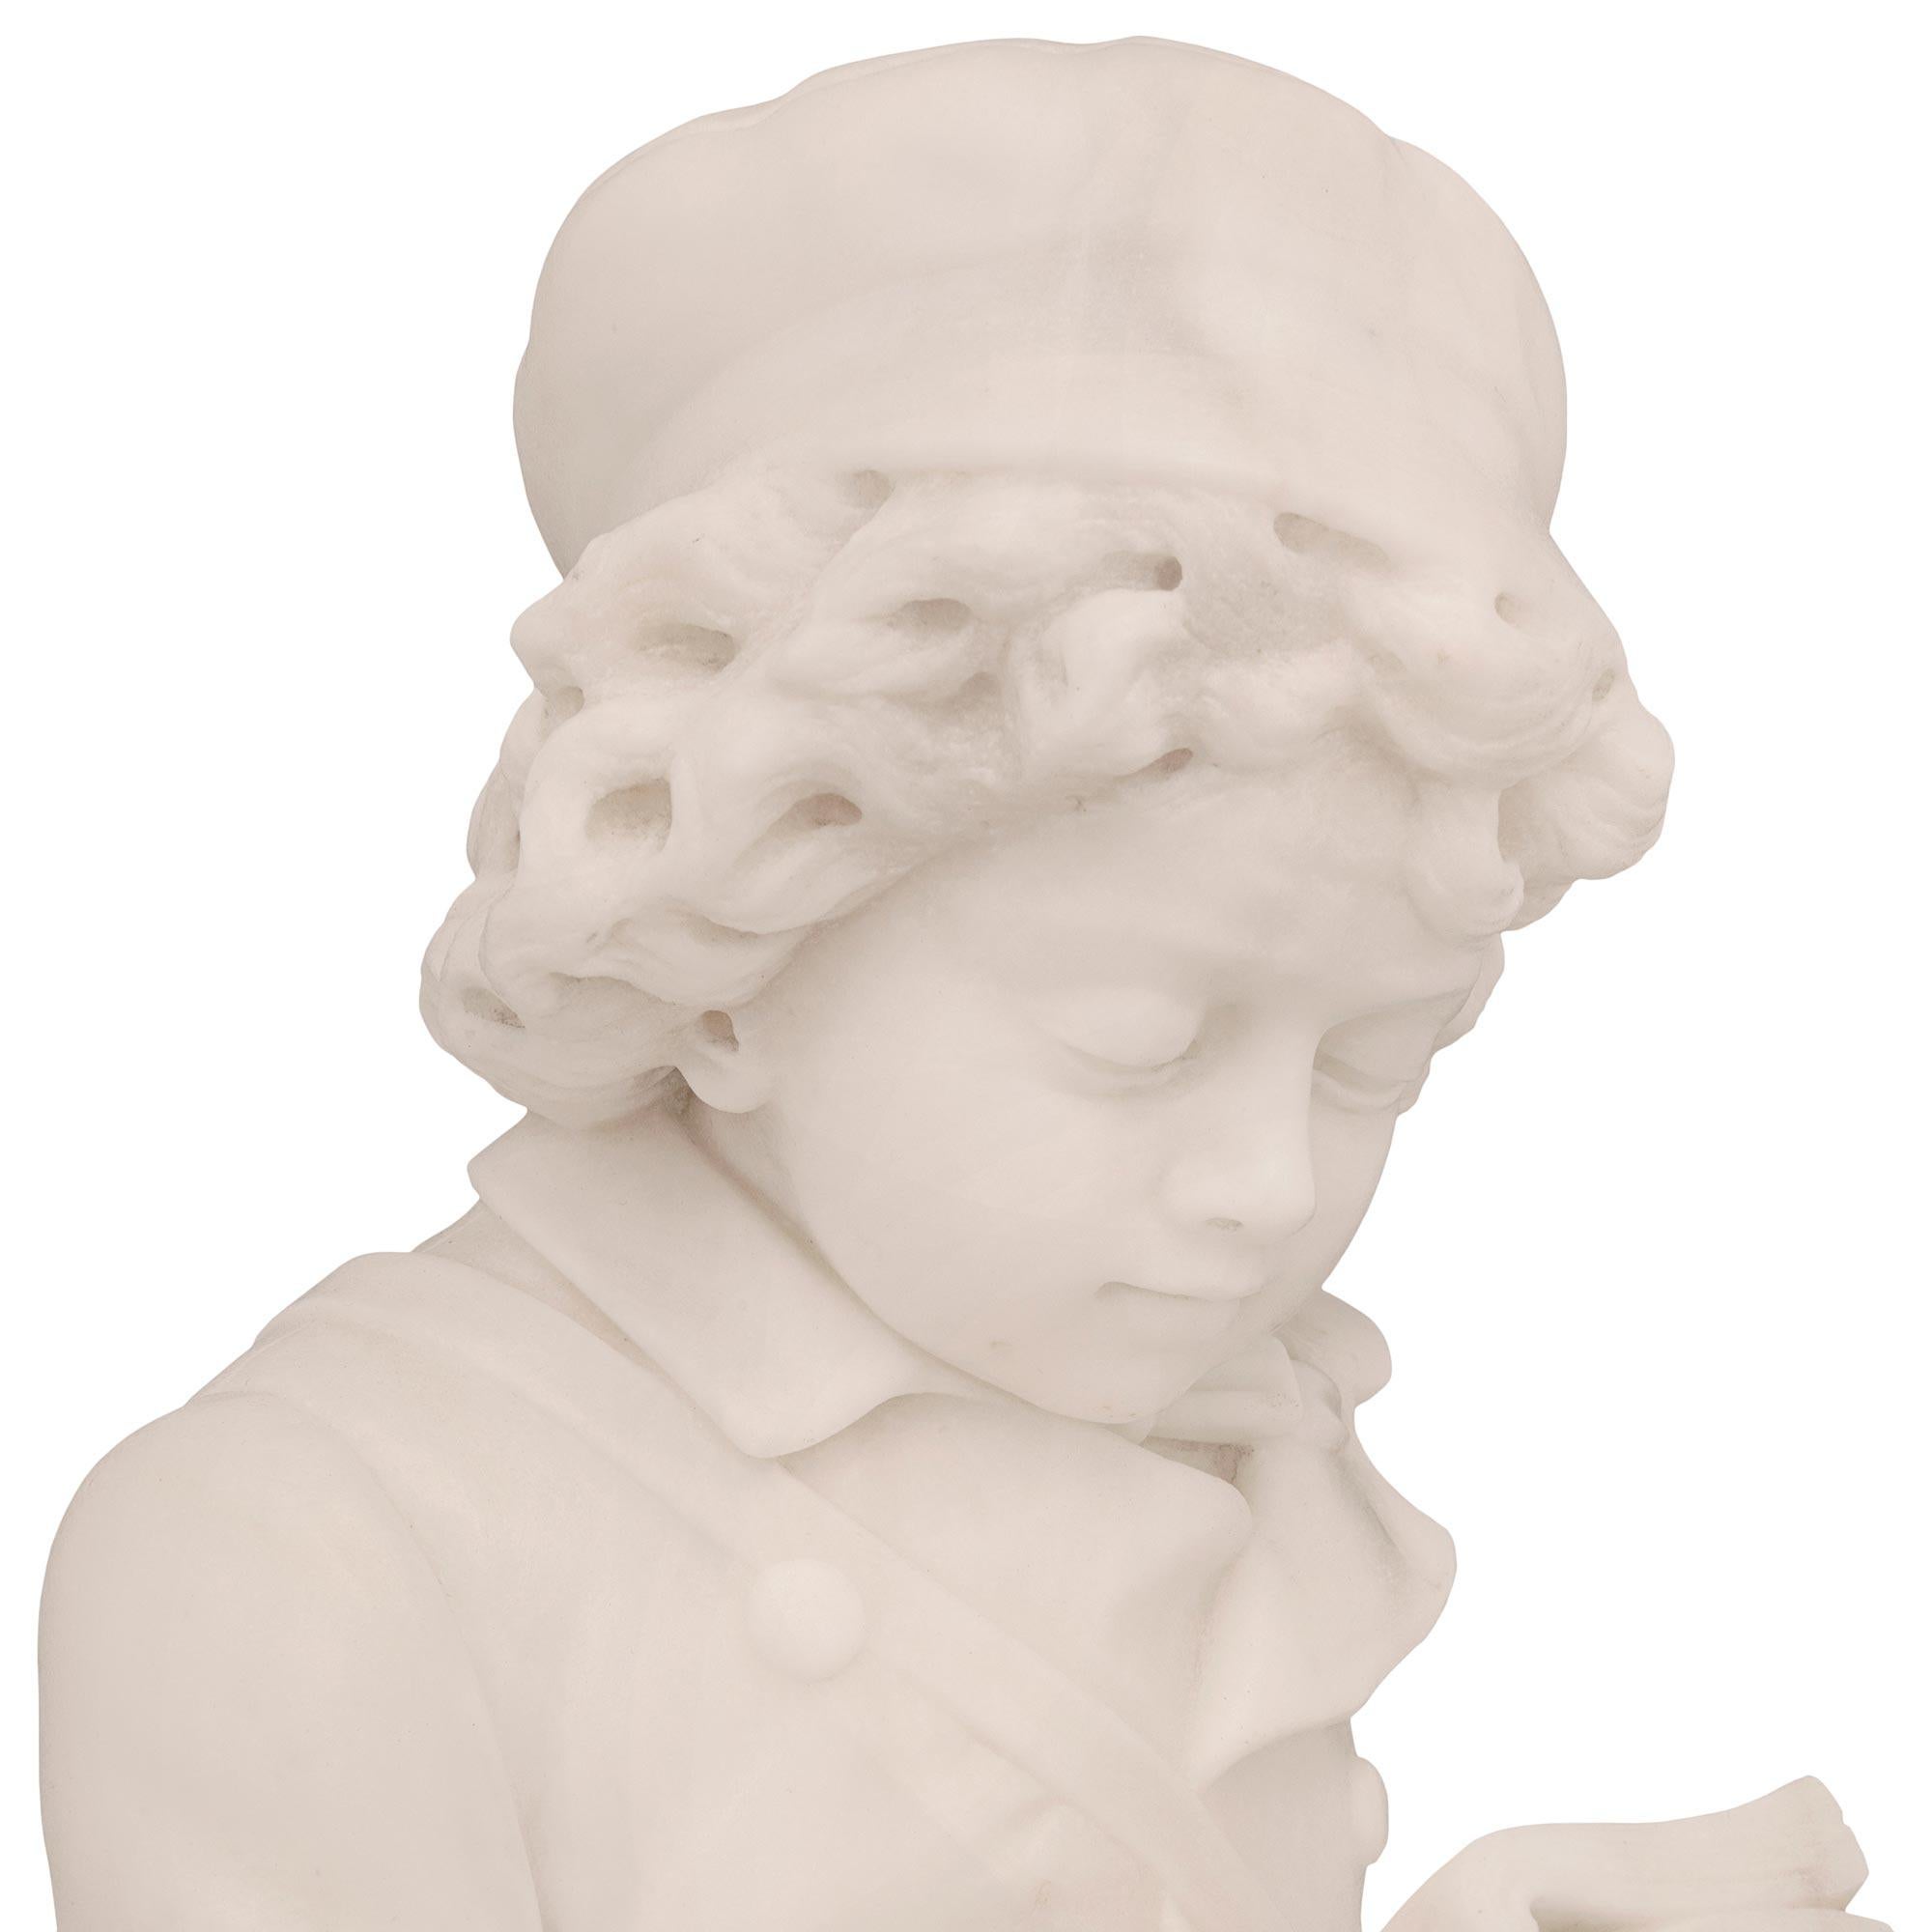 Magnifique statue en marbre blanc de Carrare de très haute qualité, datant du XIXe siècle, représentant un jeune garçon lisant un livre. La statue est surmontée d'un socle circulaire tacheté, orné de jolis motifs au sol et de fleurs épanouies